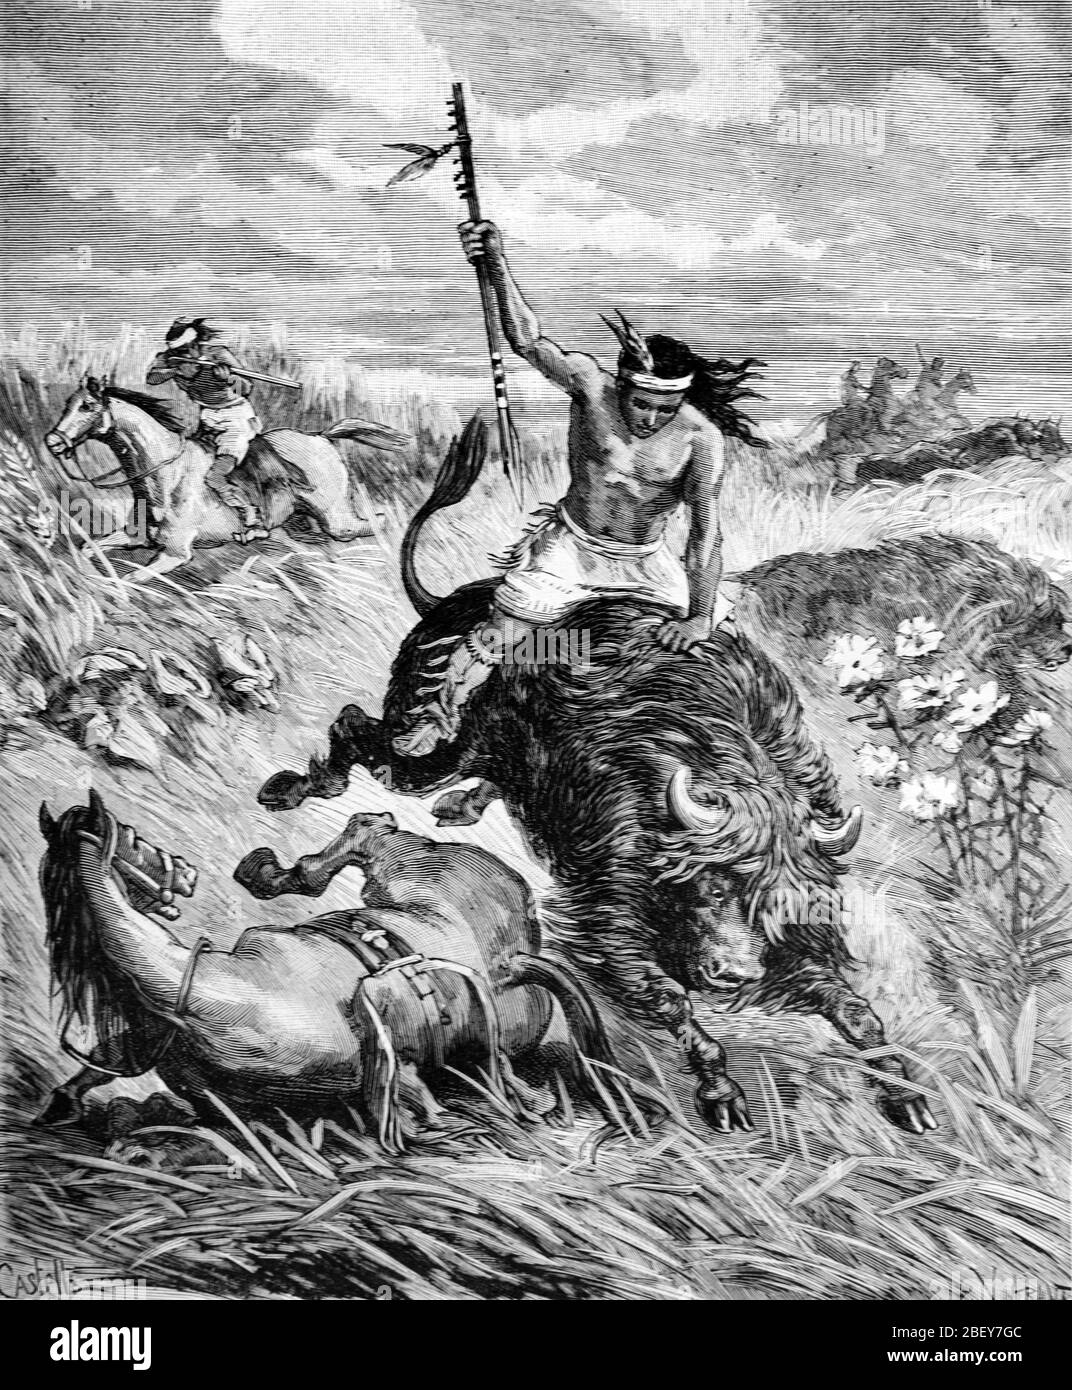 Comanche Plains Caccia indiana Bison o Buffalo americano sulle pianure grandi Stati Uniti d'America Stati Uniti o Stati Uniti. Vintage o Old Illustration o Engraving 1888 Foto Stock